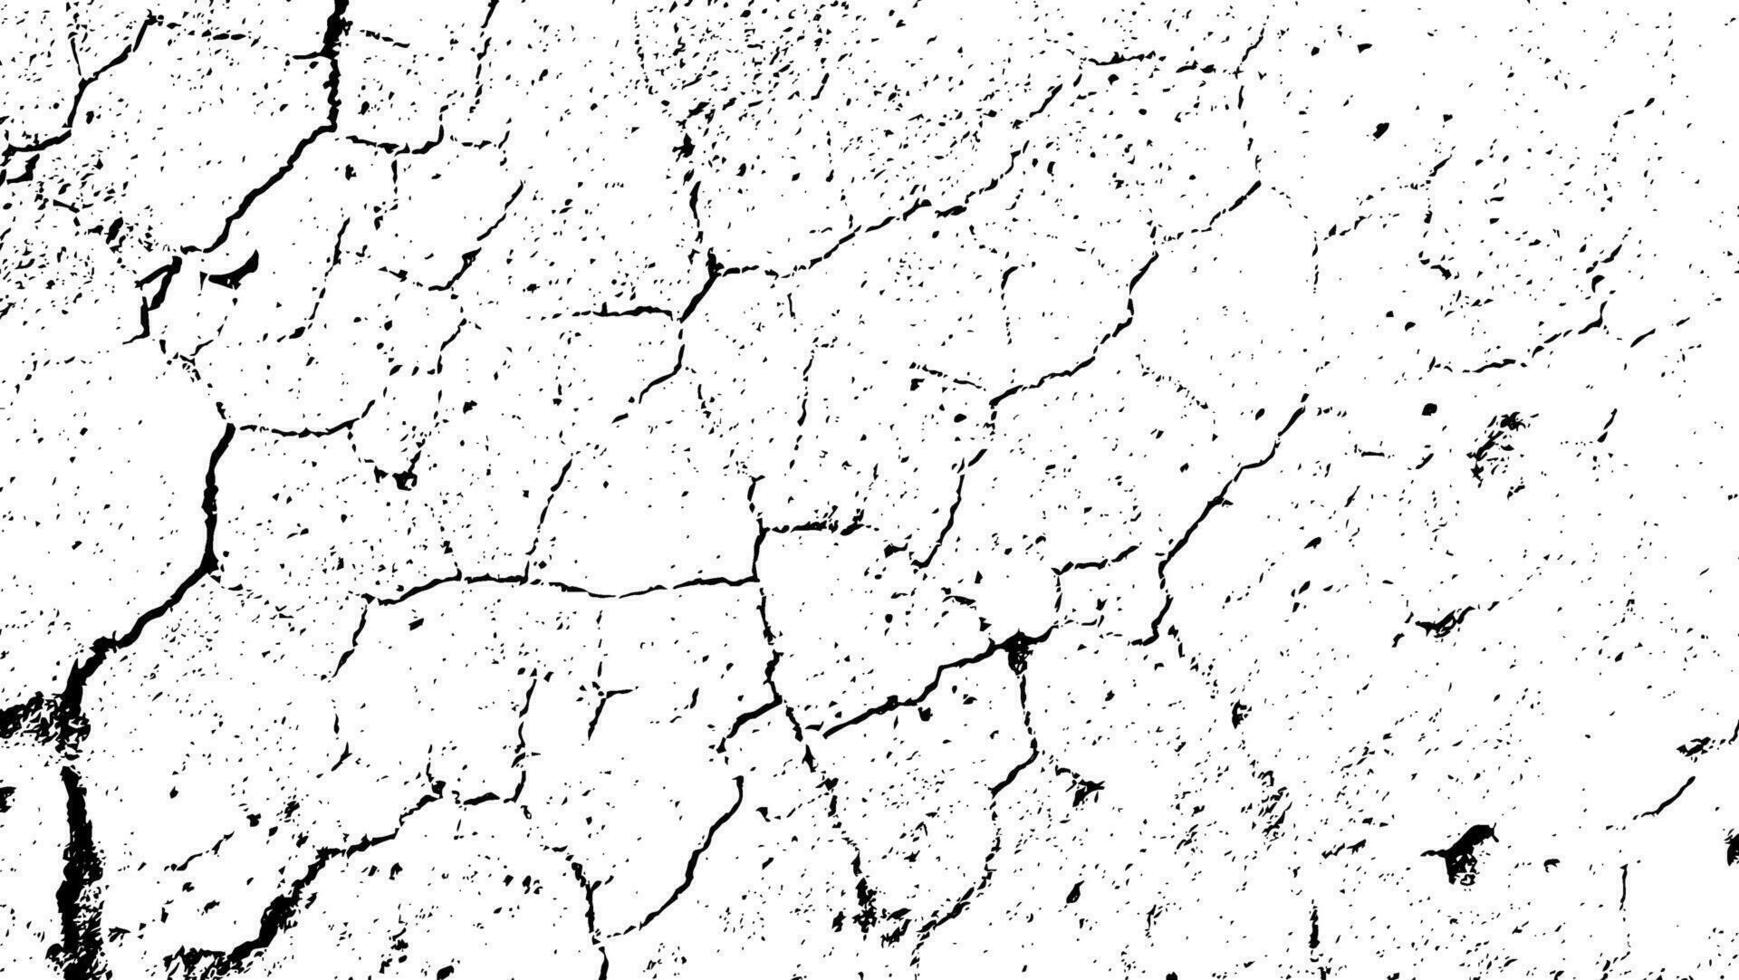 een zwart en wit beeld van een gebarsten muur gebarsten gebarsten structuur achtergrond, structuur barst structuur bodem gebroken structuur scheuren modder kalksteen beton structuur klei droog stoffig structuur knetteren vector